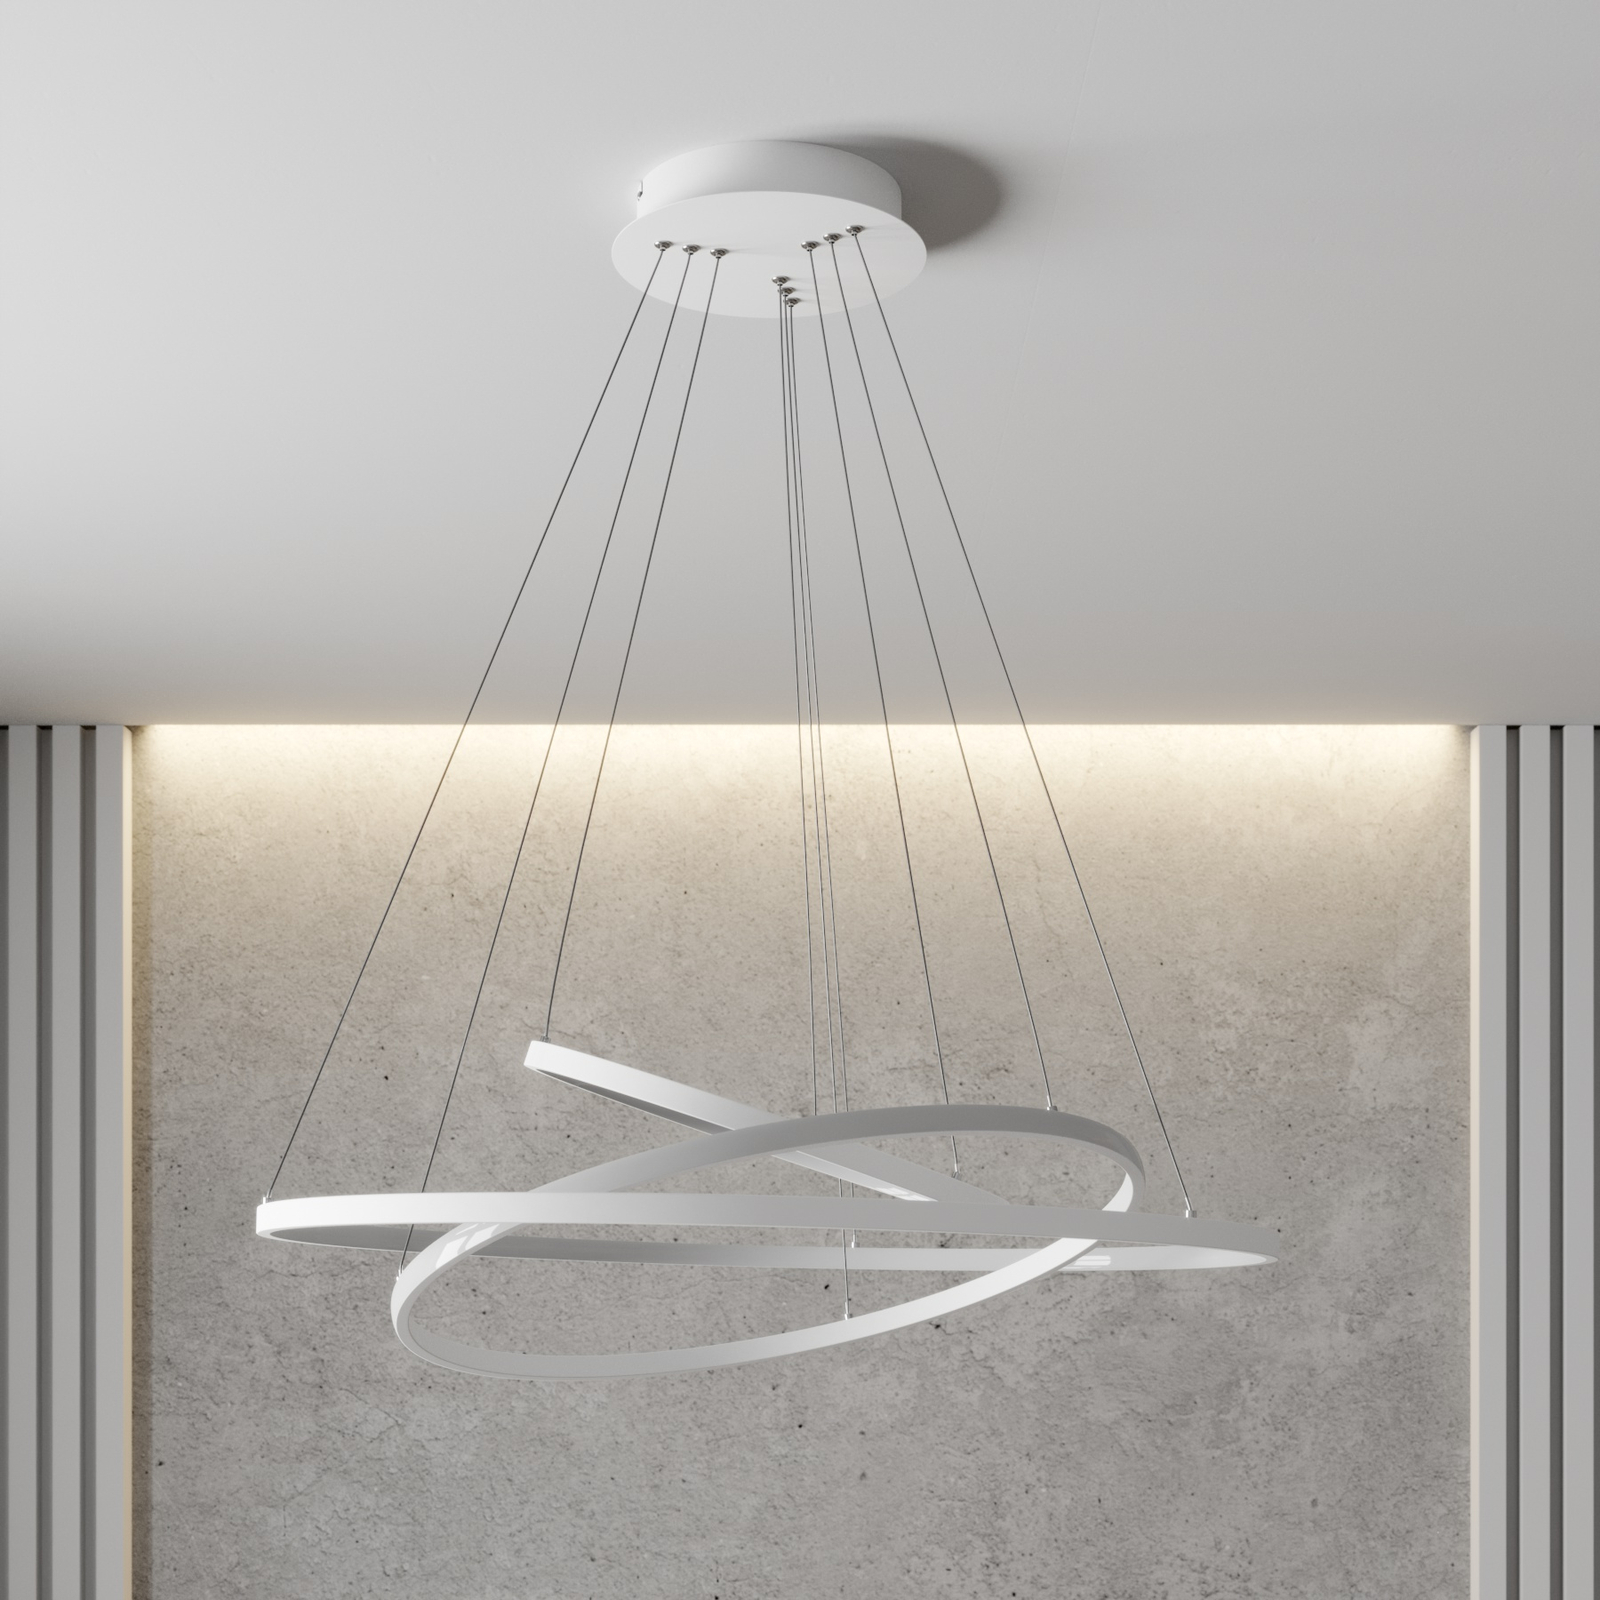 LED hanglamp Ezana gemaakt van drie ringen, wit